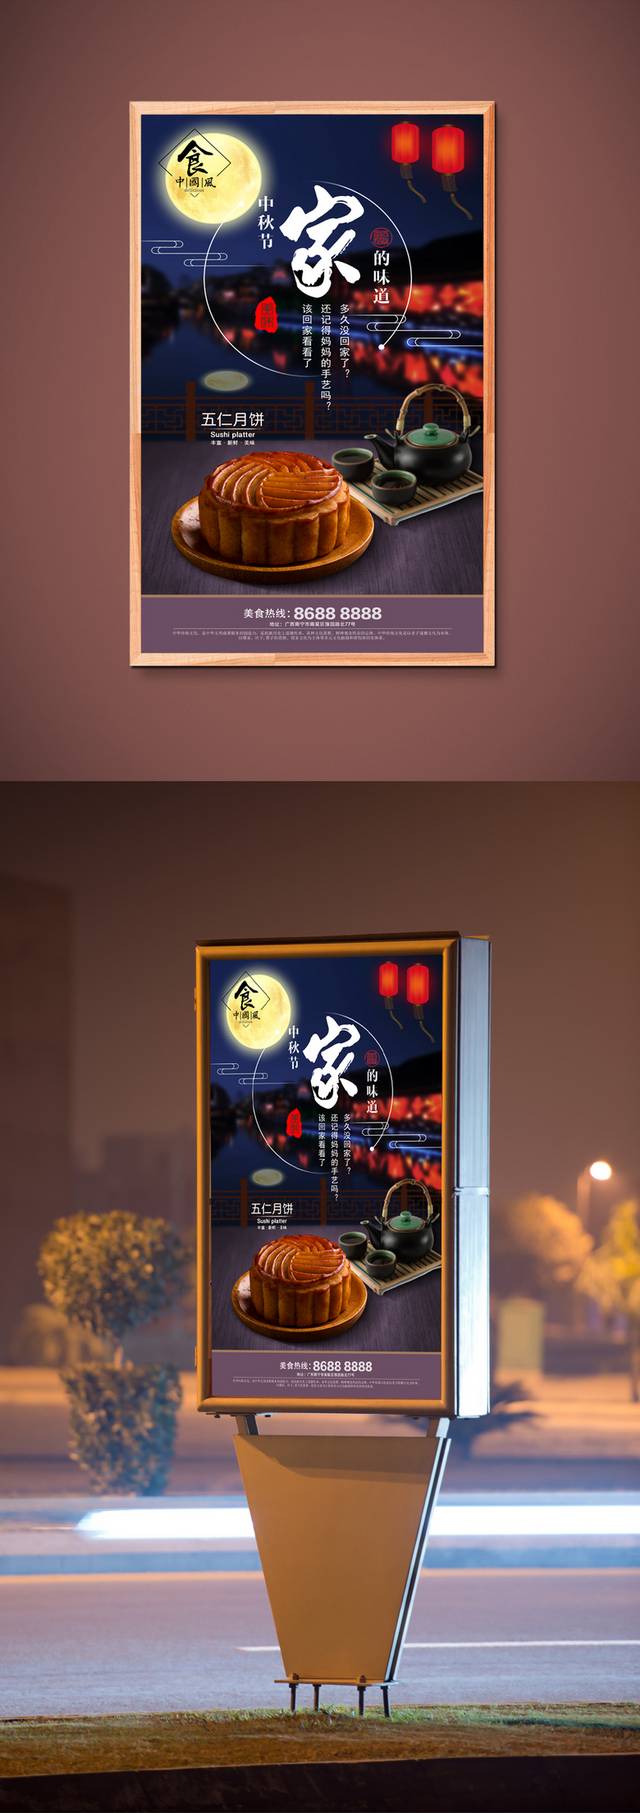 高清中秋秋月饼促销宣传海报设计